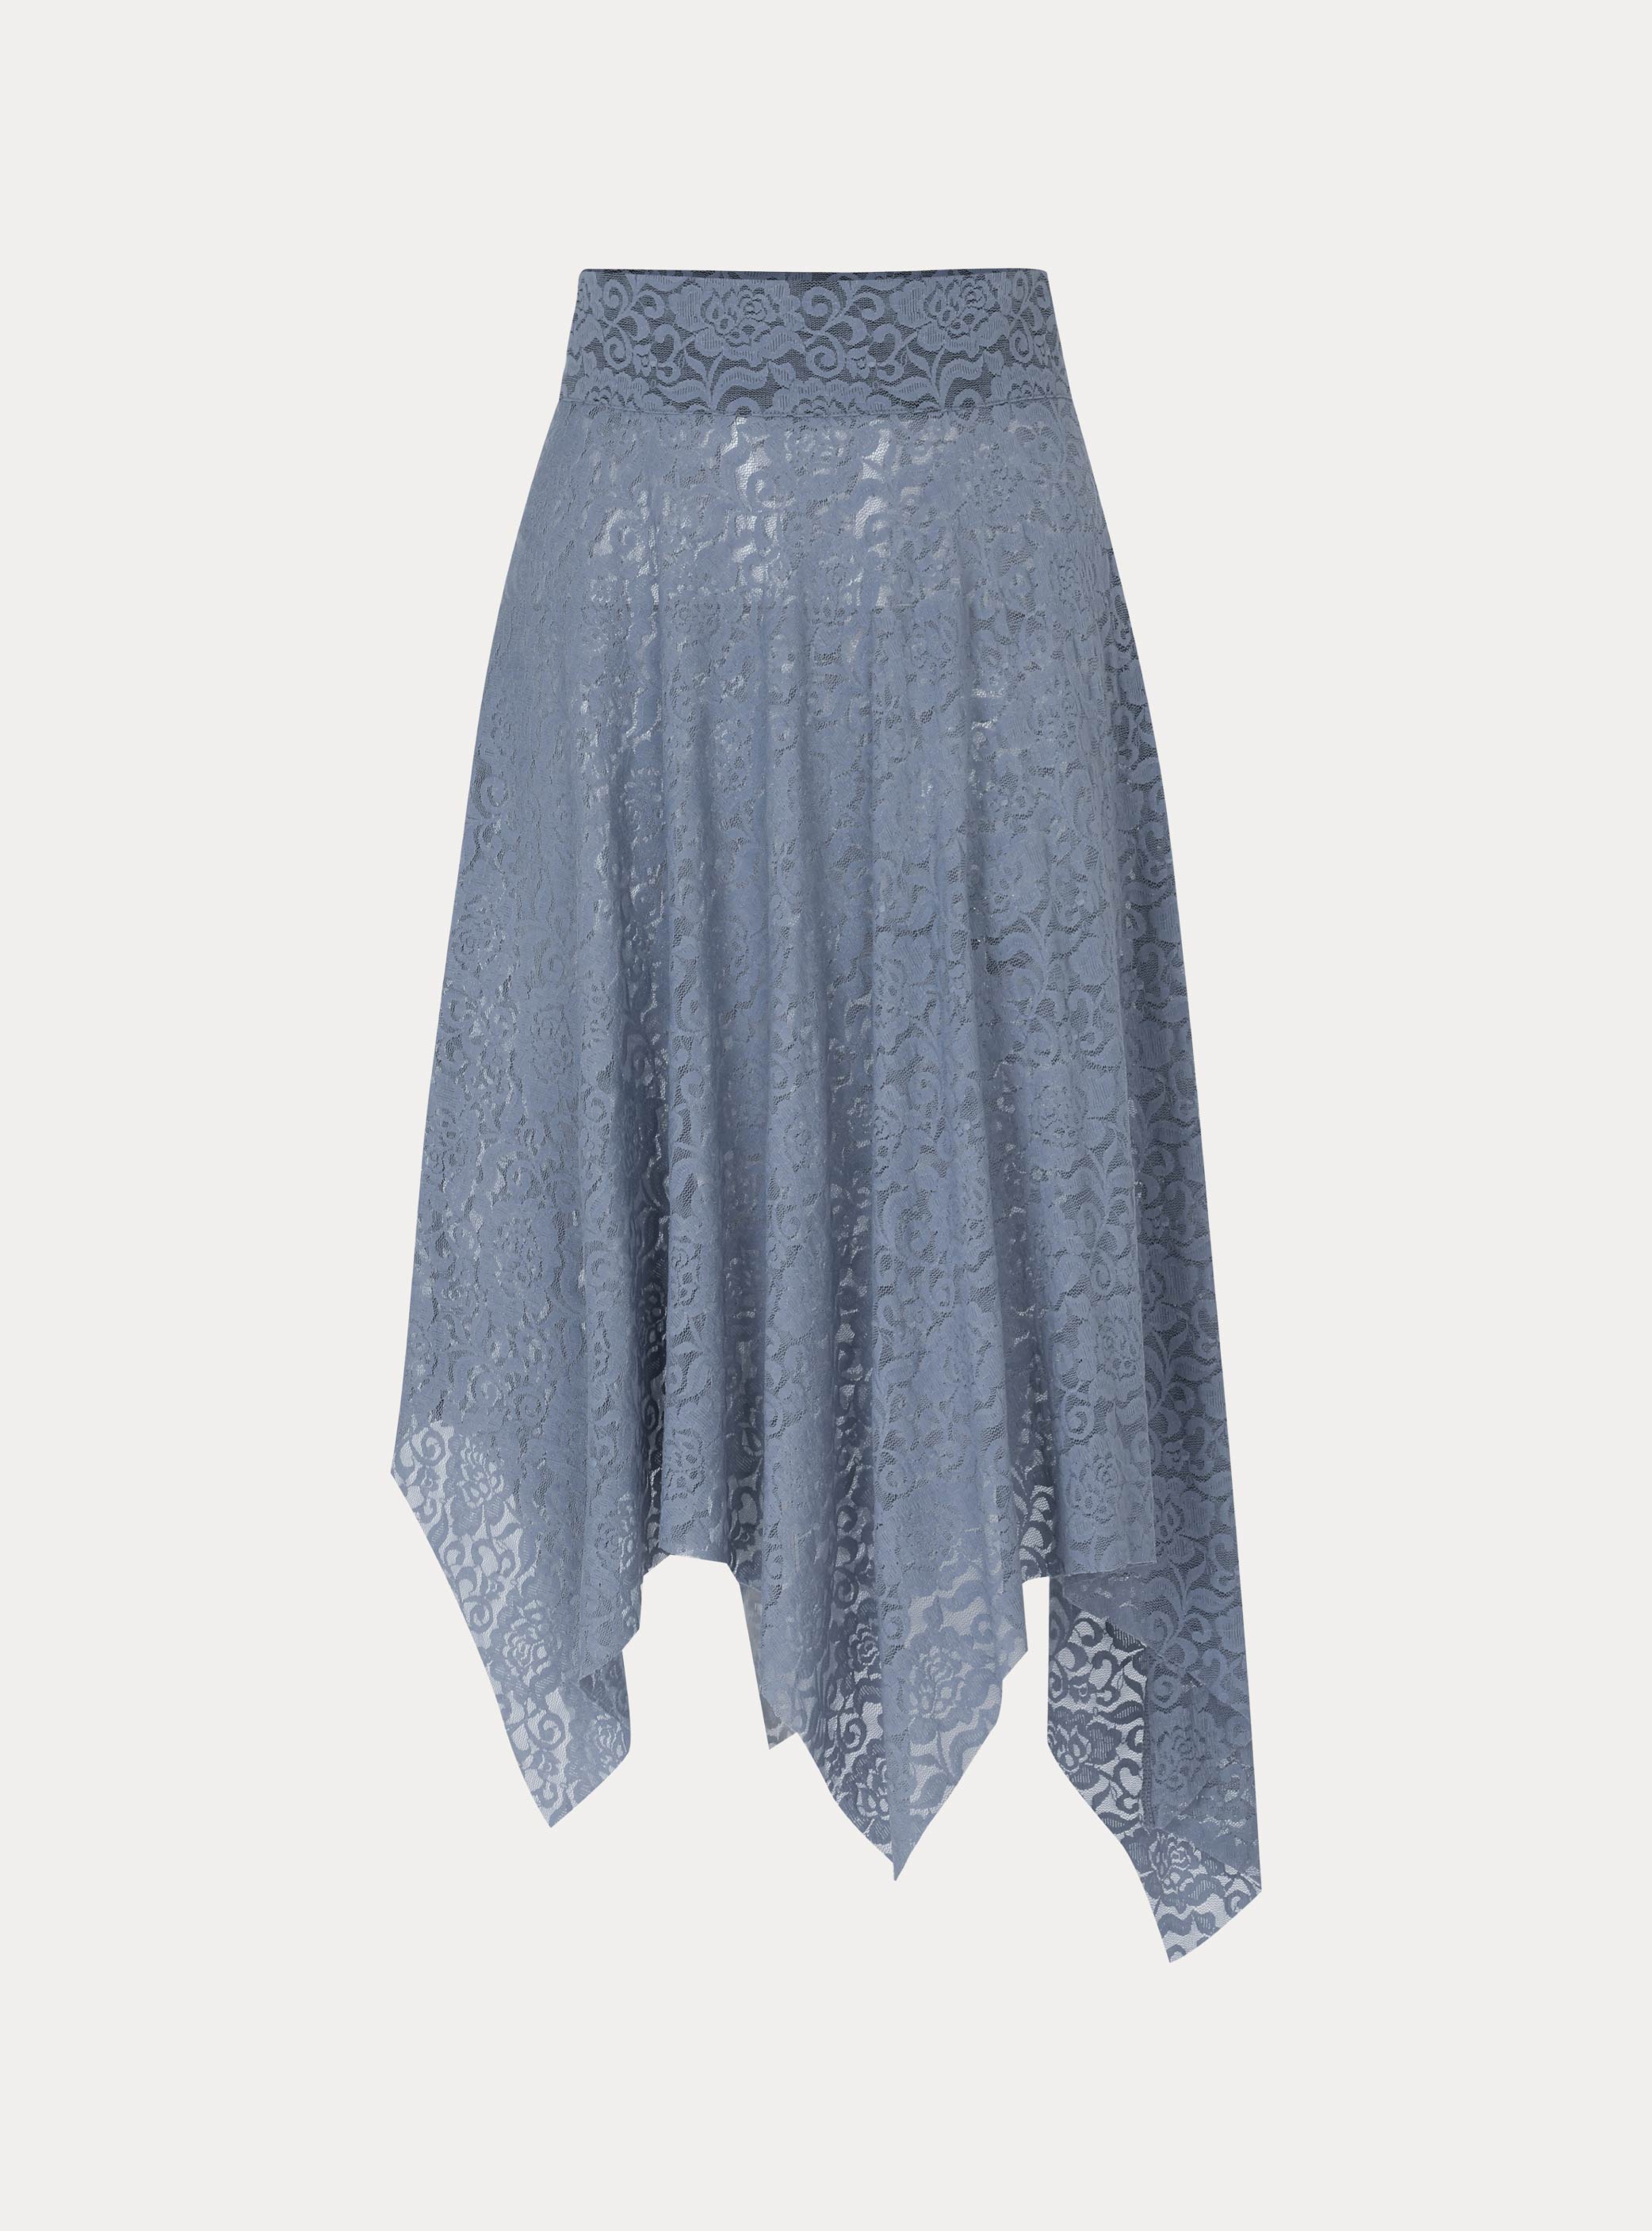 유메 스커트  Yumé skirt (2color)